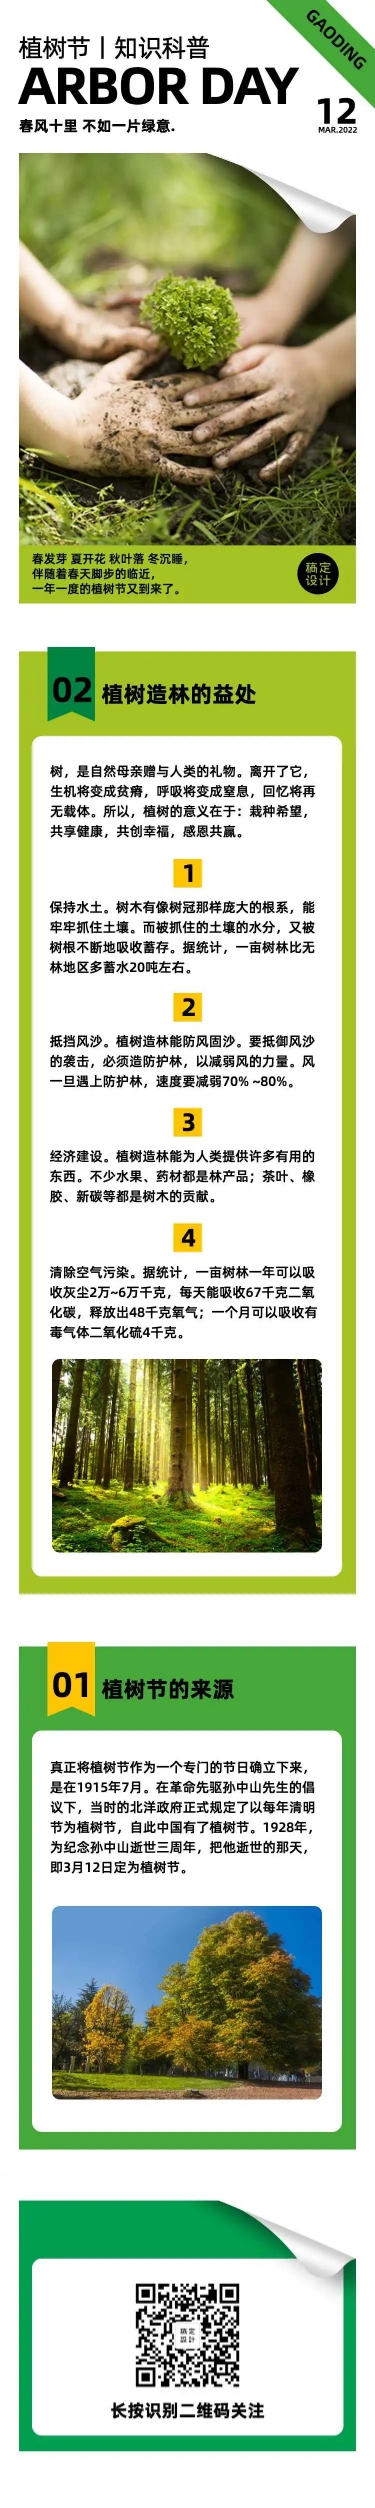 H5长页简约时尚留白植树节知识科普环保绿色公益